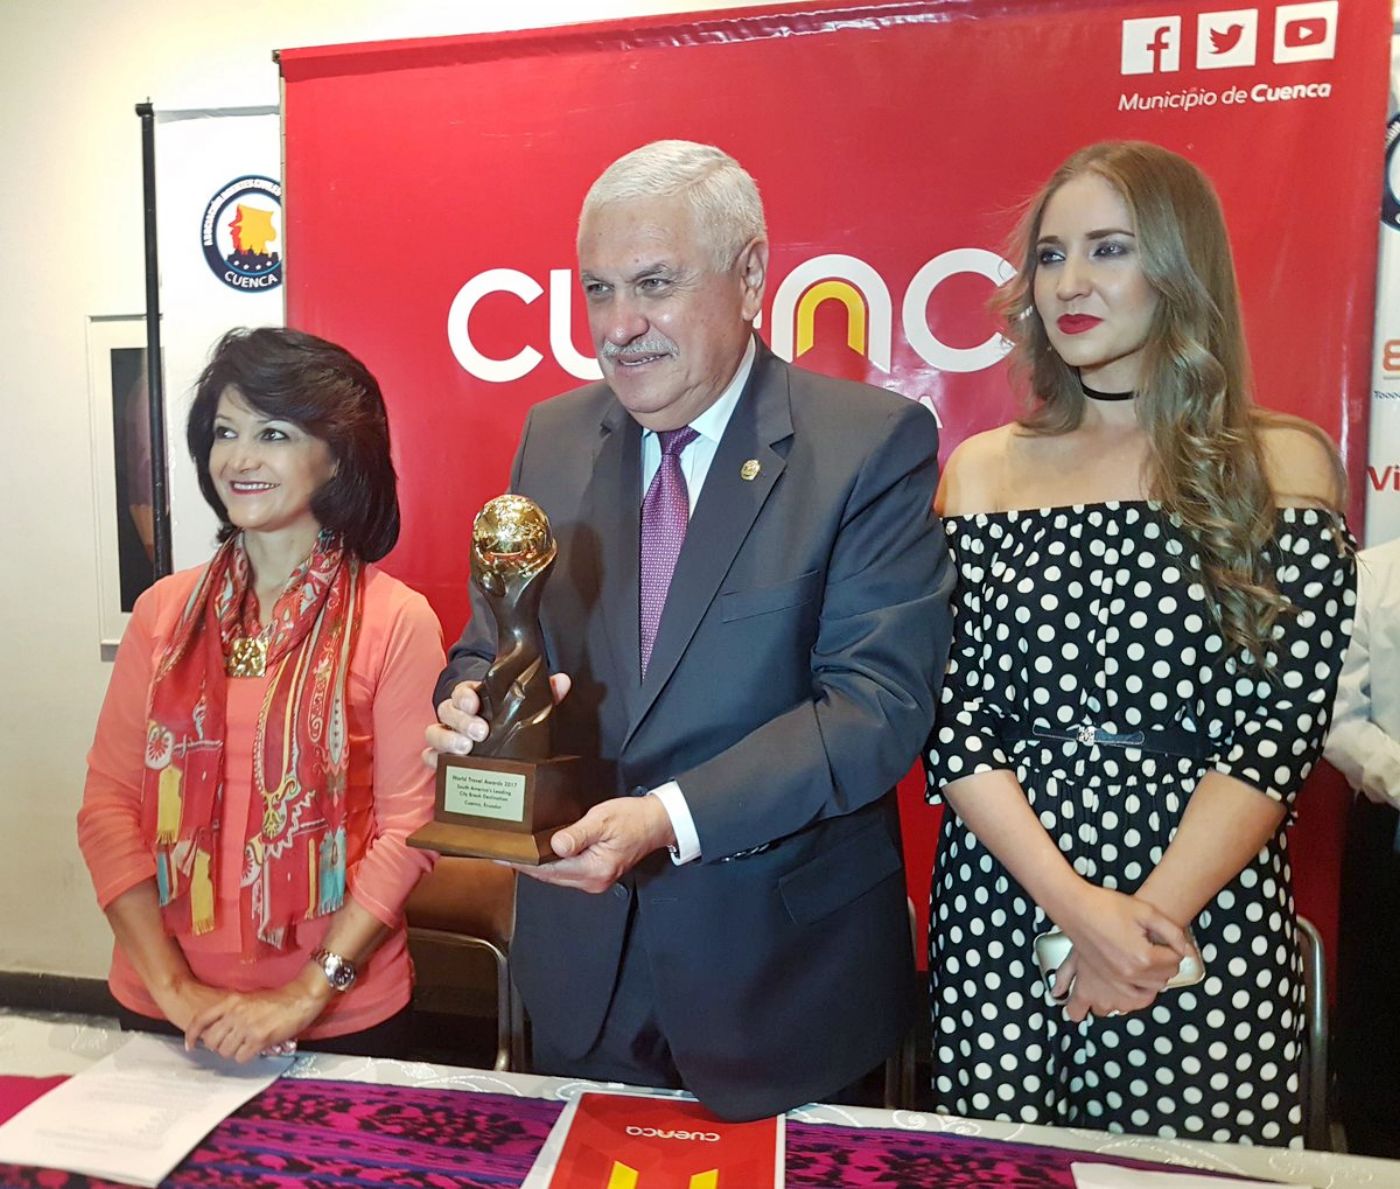  Por segundo año consecutivo, Cuenca obtuvo el premio como Mejor Destino para Vacaciones cortas en Sudamérica en los World Travel Awards. Foto: Archivo.